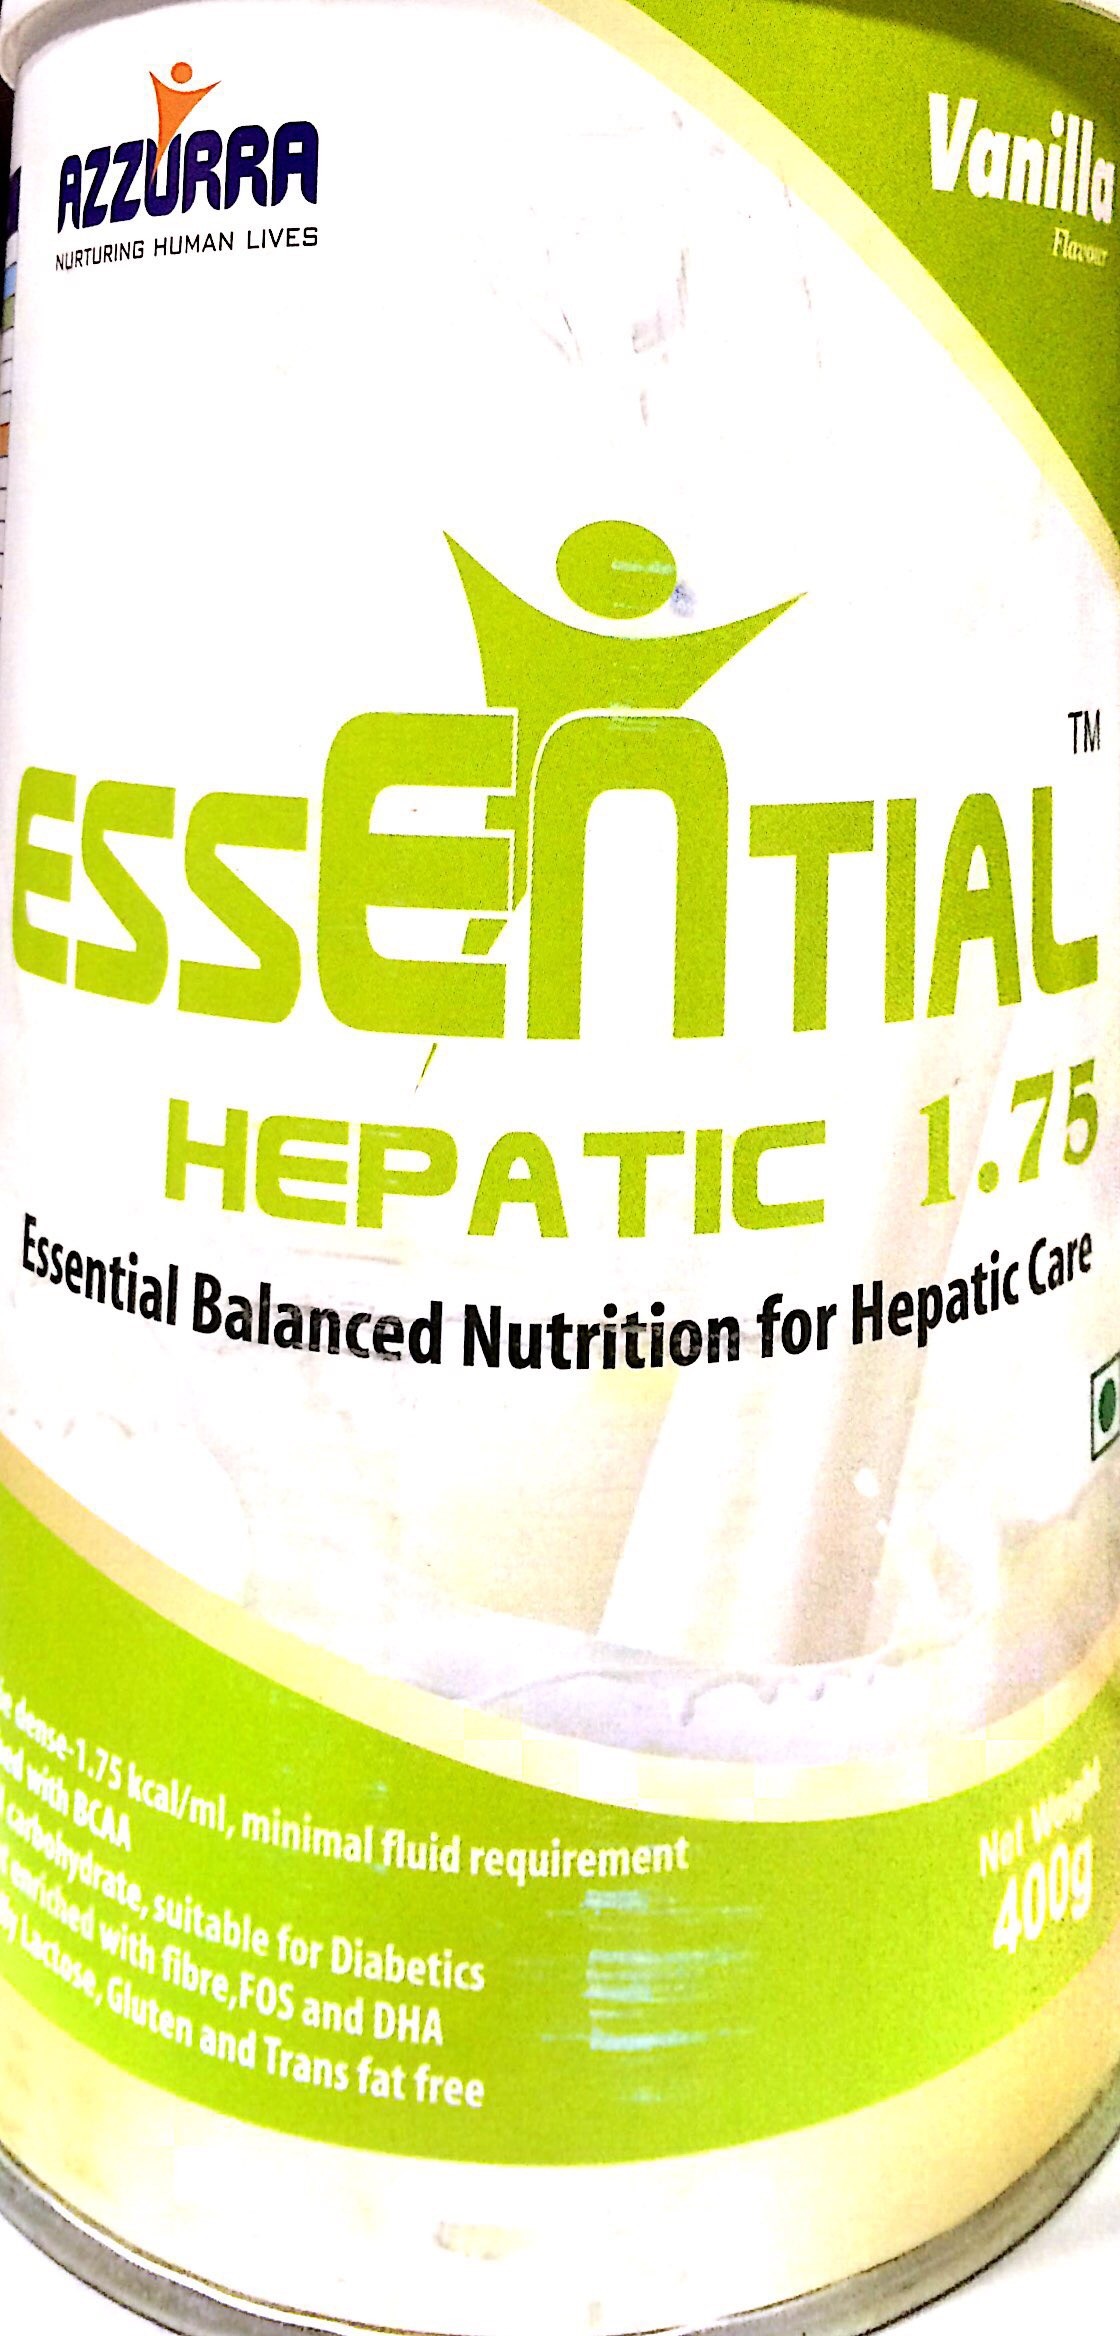 Essential Hepatic 1.75 400g. Vanilla